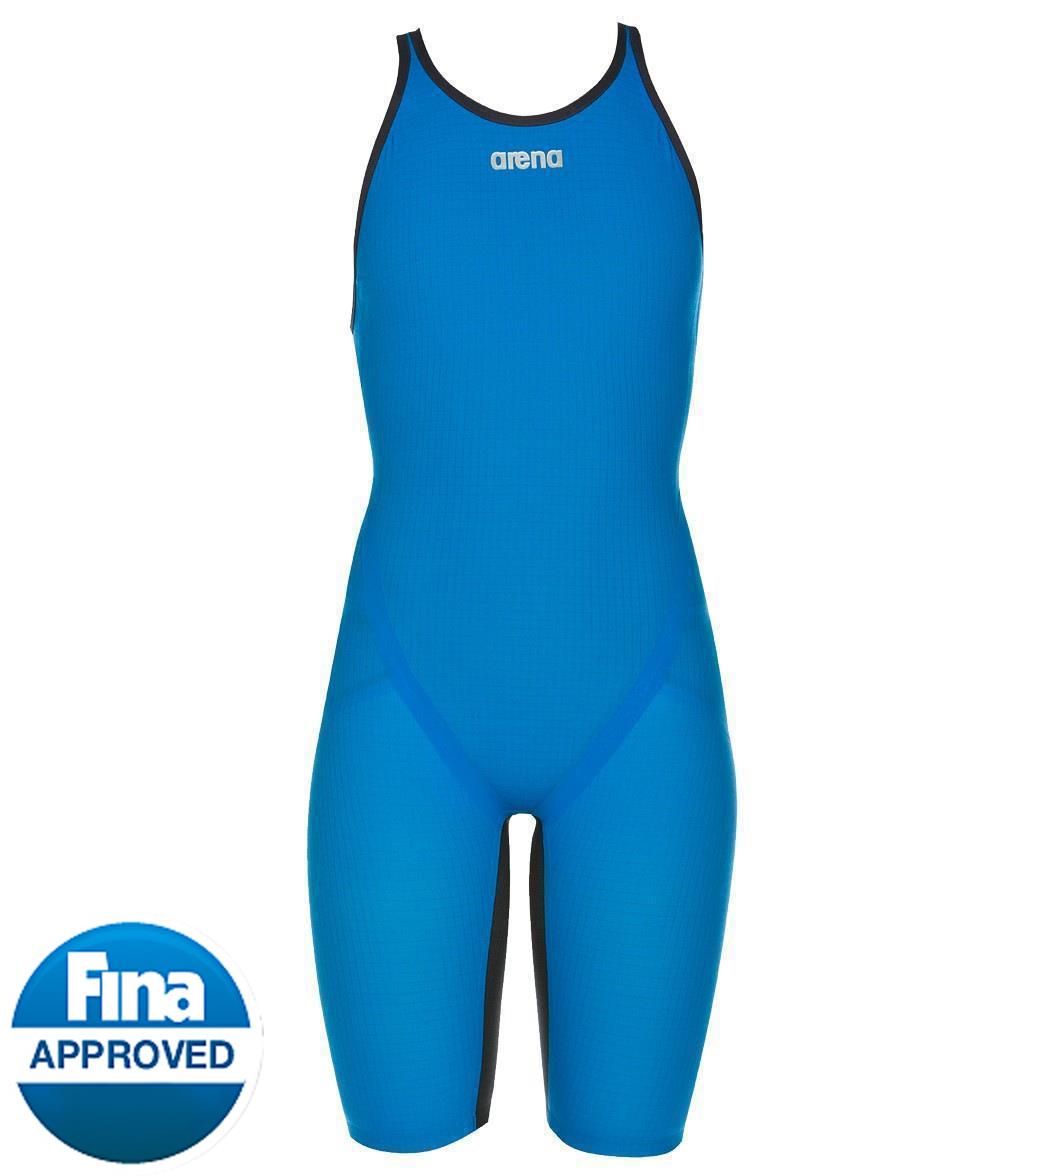 Arena Women's Powerskin Carbon Flex Vx Open Back Kneeskin Tech Suit Swimsuit - Imperial Blue/ Dark Grey 30 Nylon/Spandex/Carbon - Swimoutlet.com